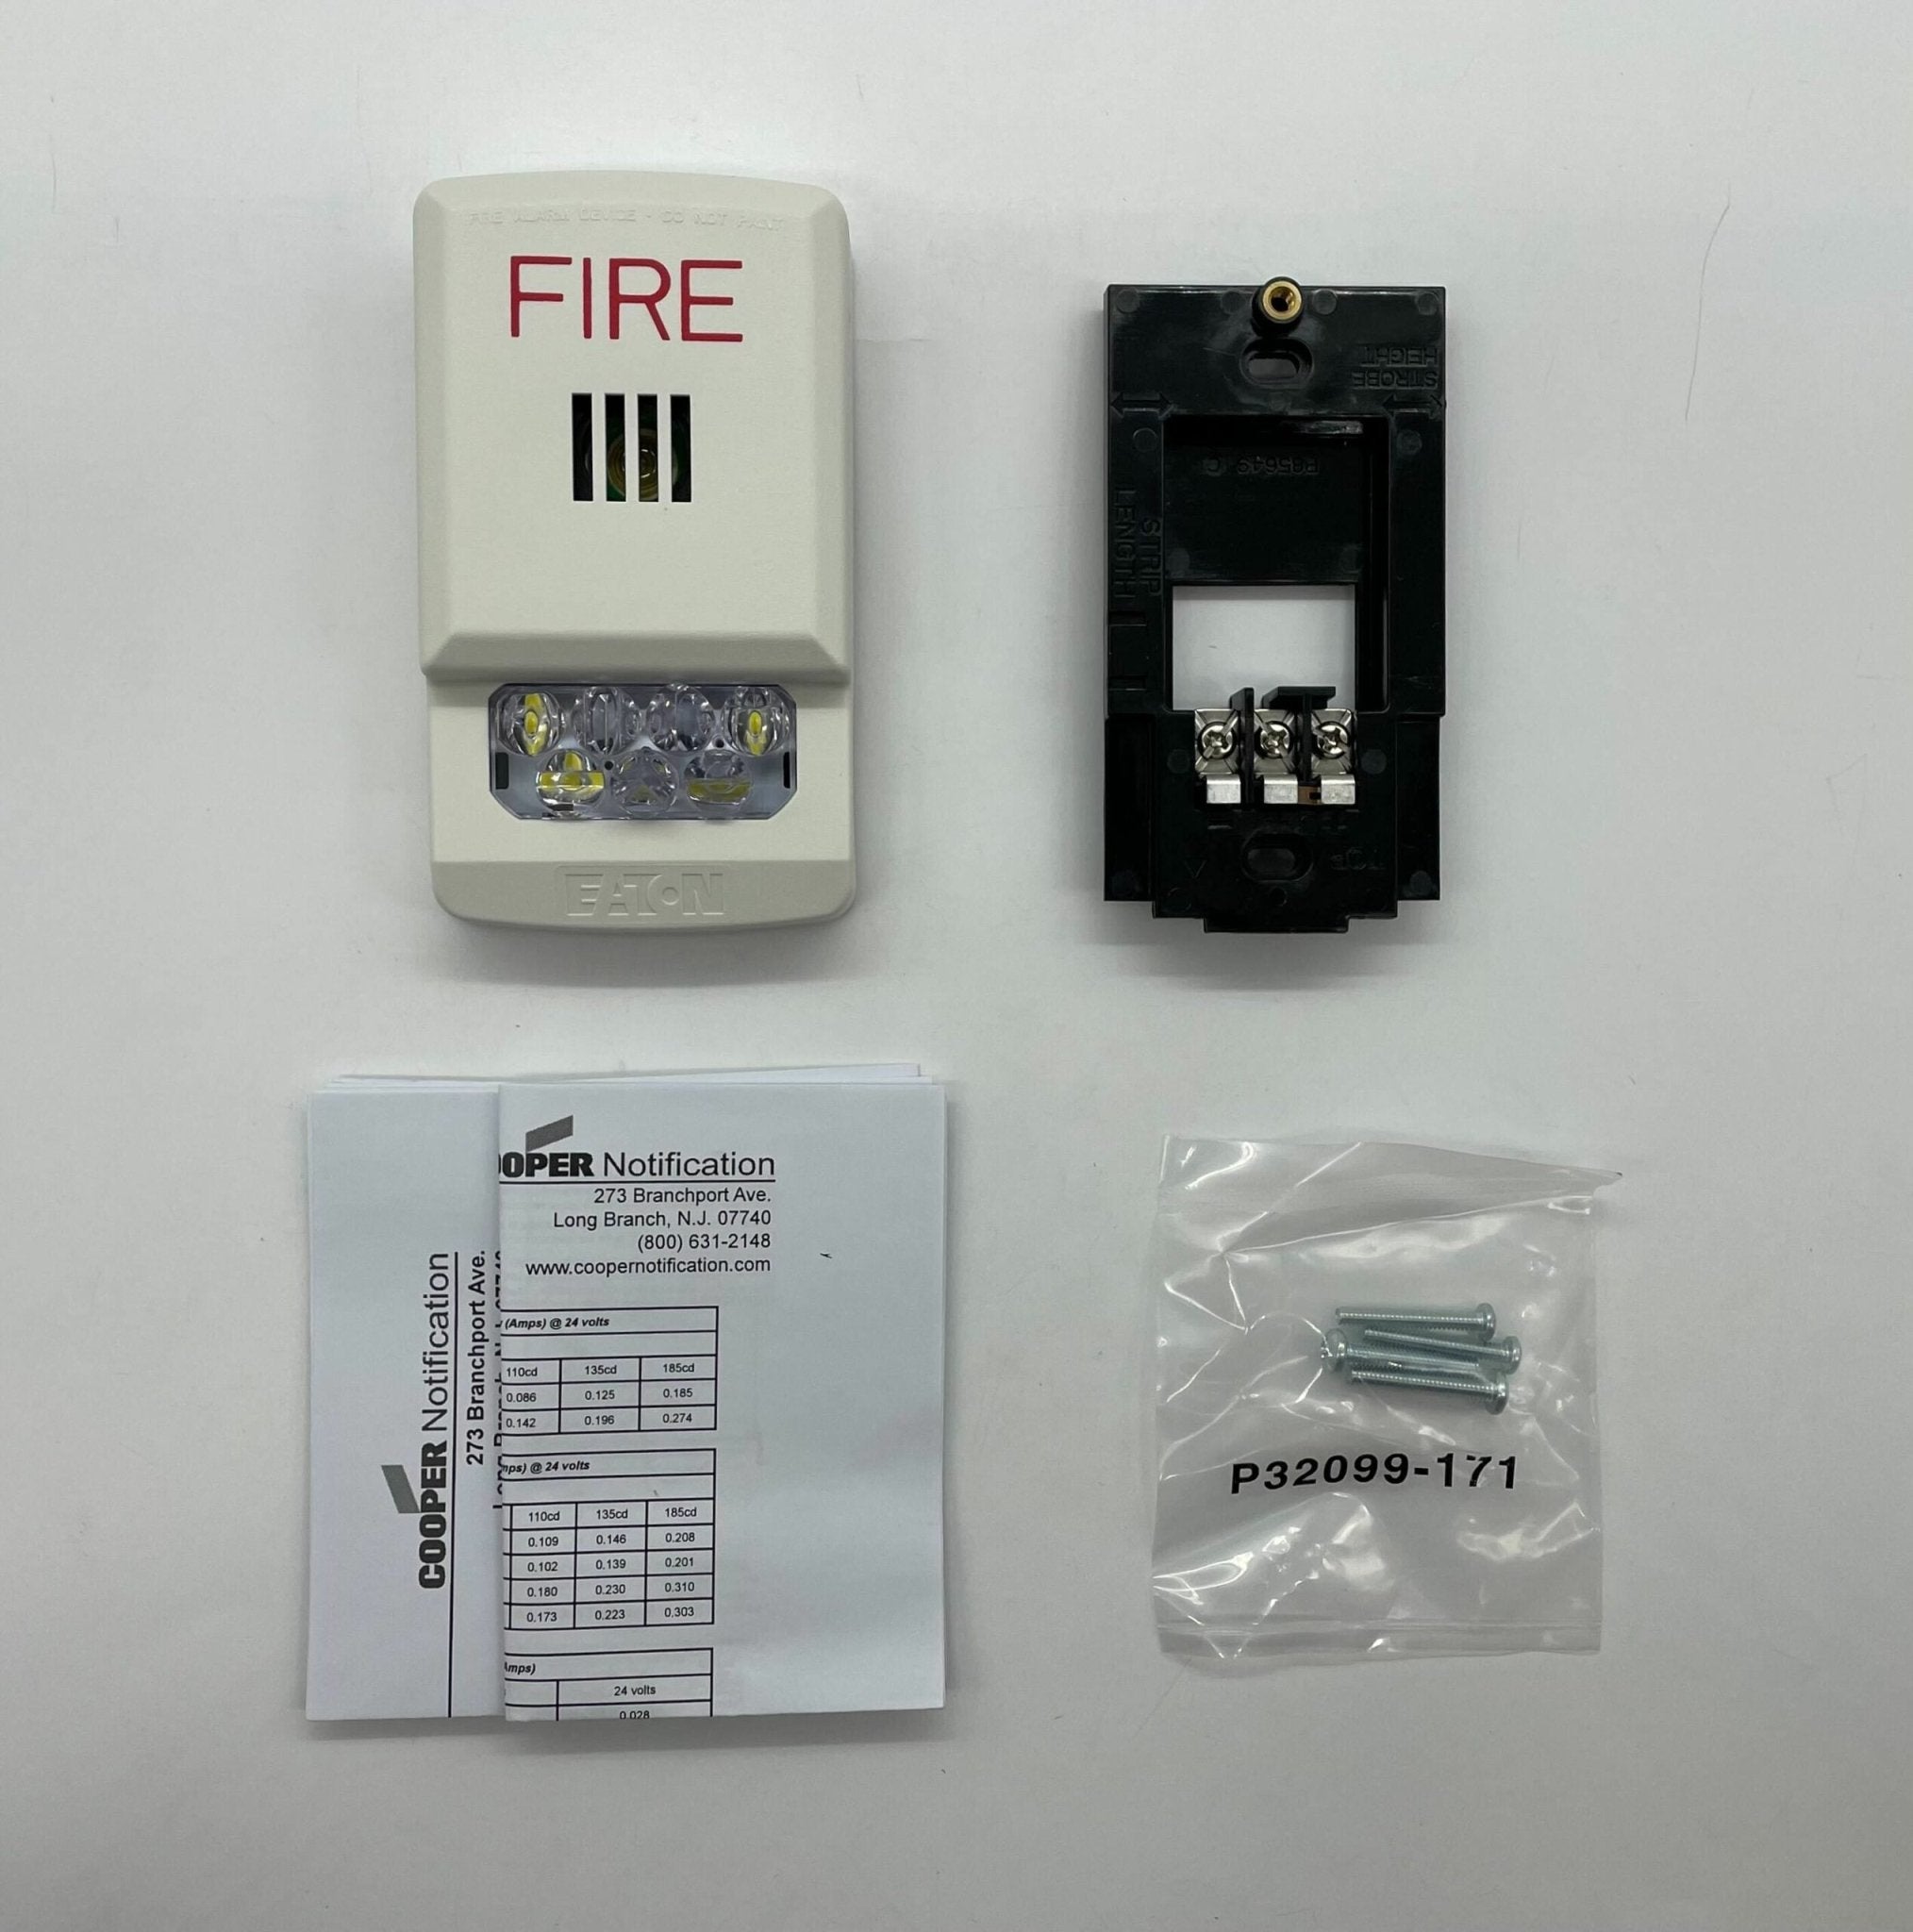 Wheelock ELHSW - The Fire Alarm Supplier